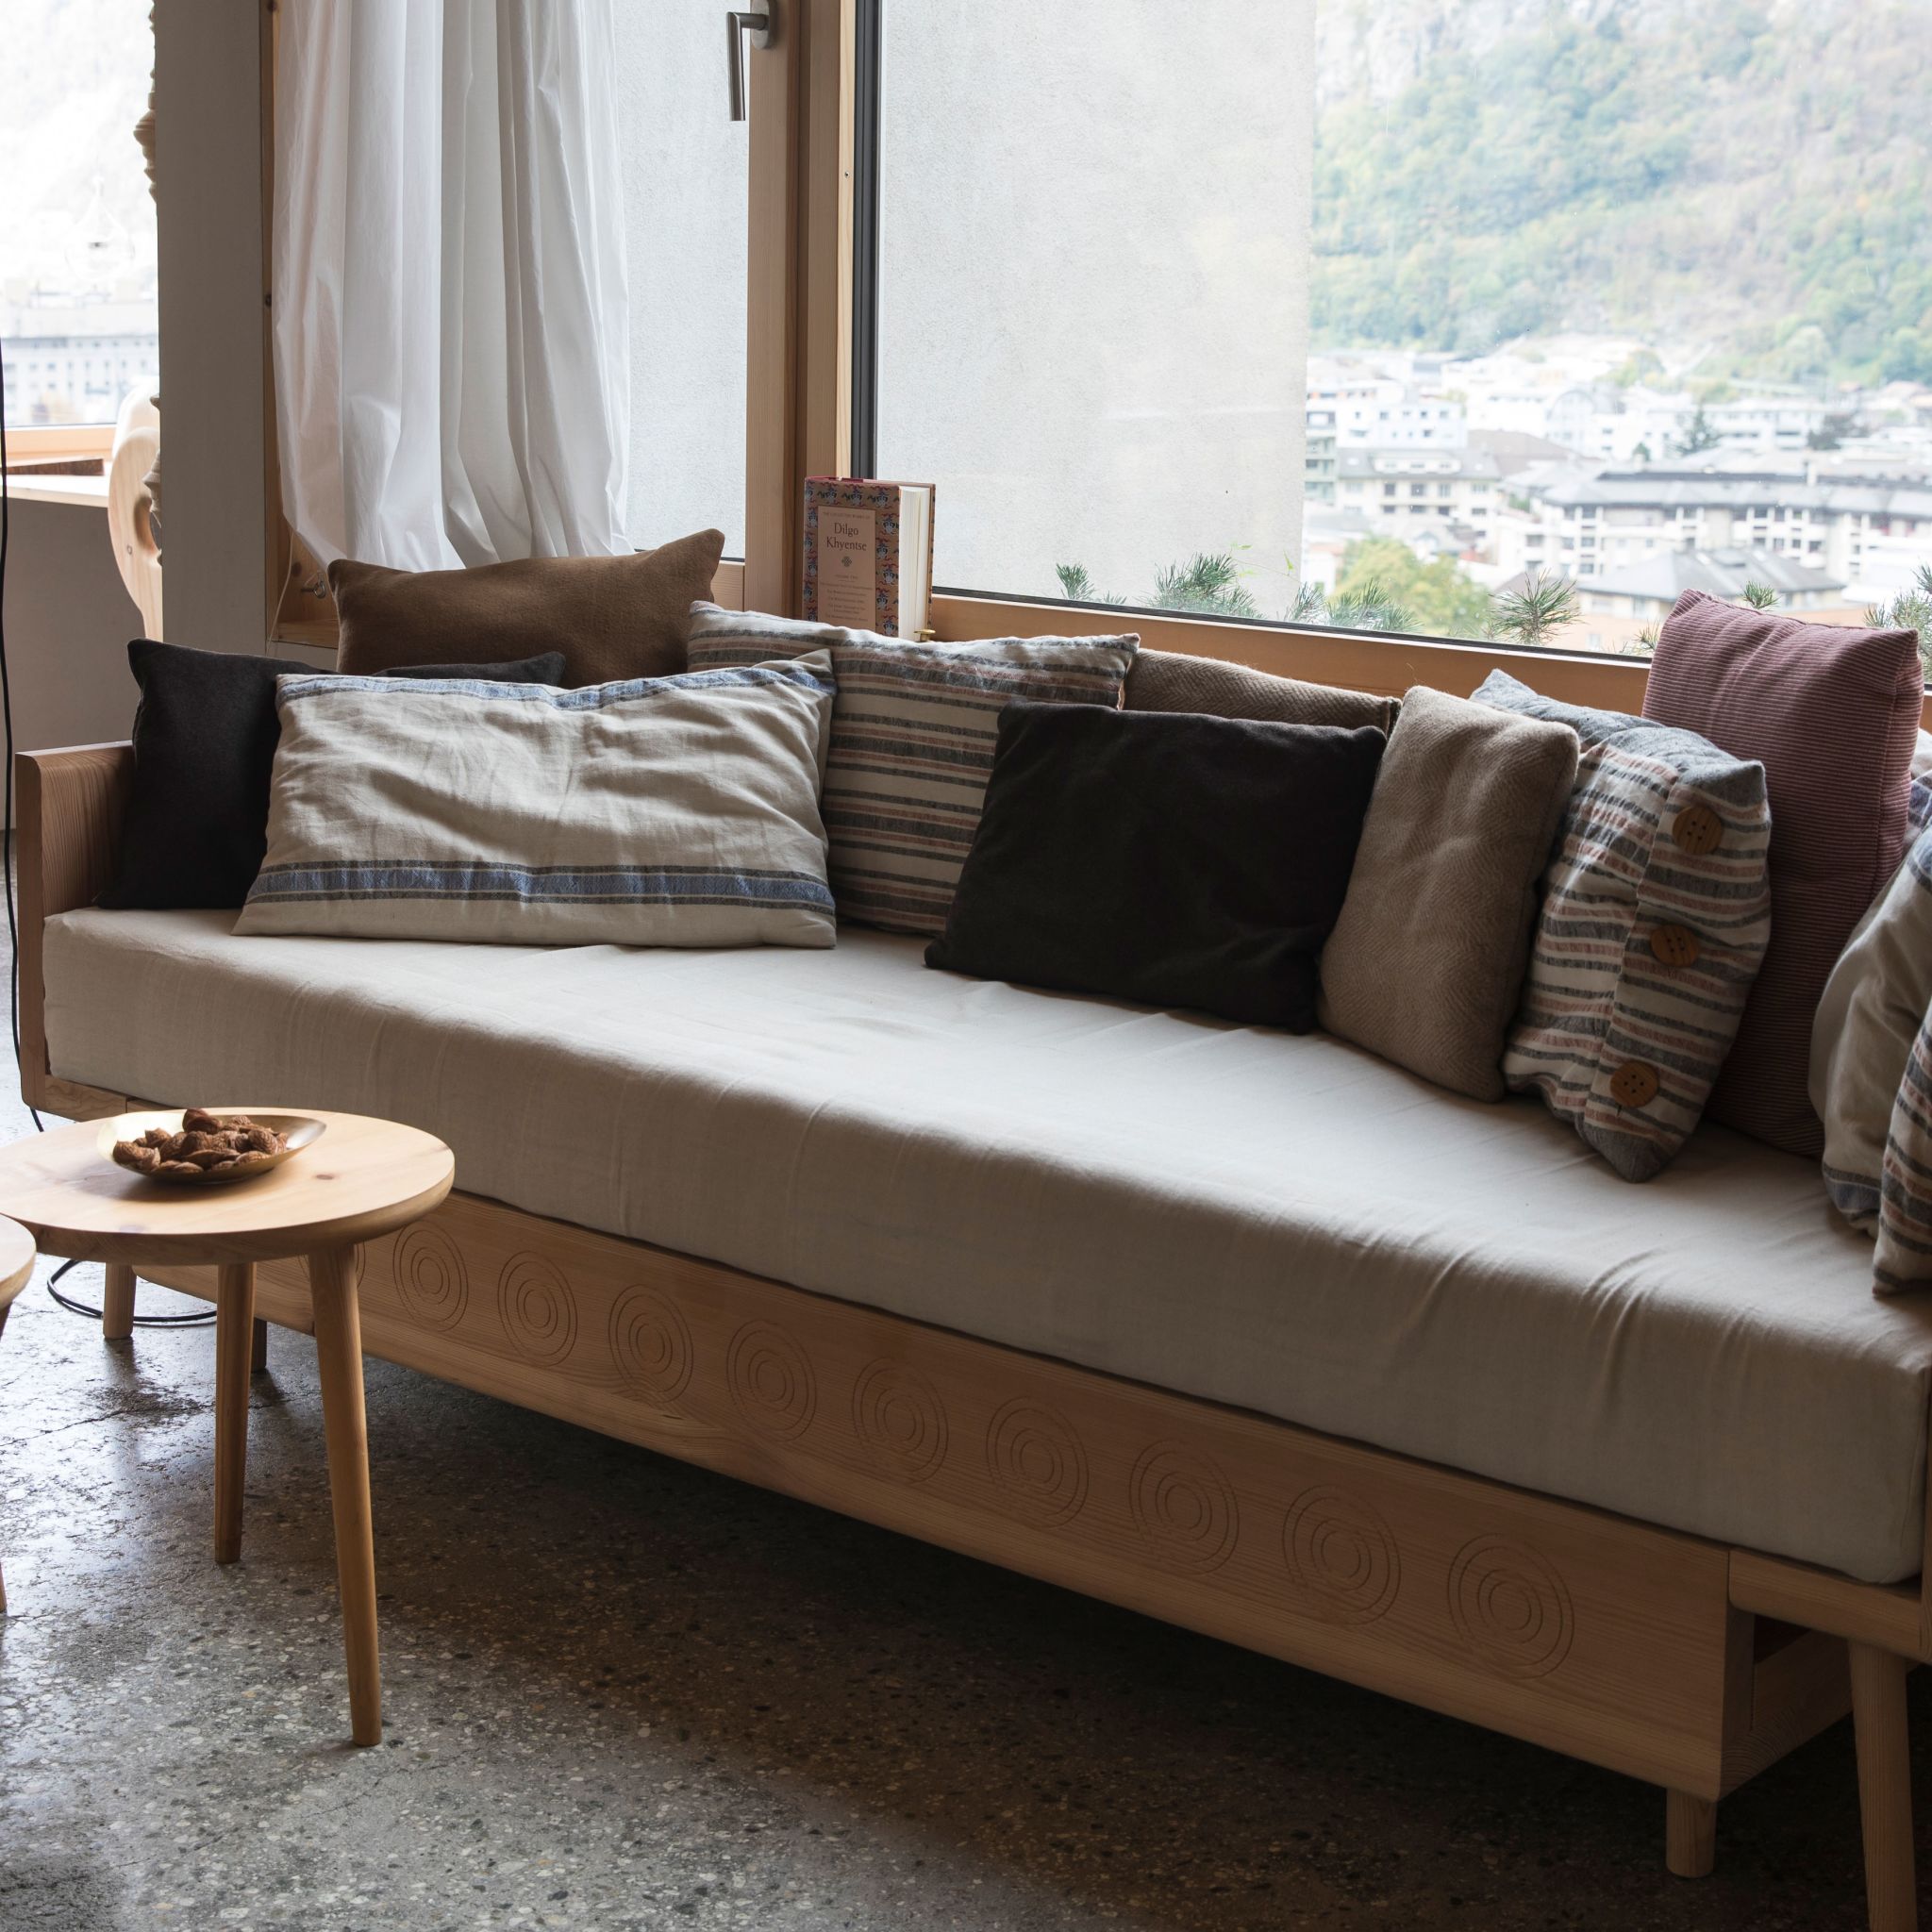 Valaisan furniture - Stool and bed in the "Gütschi" style Valais Wallis Schweiz Switzerland Suisse